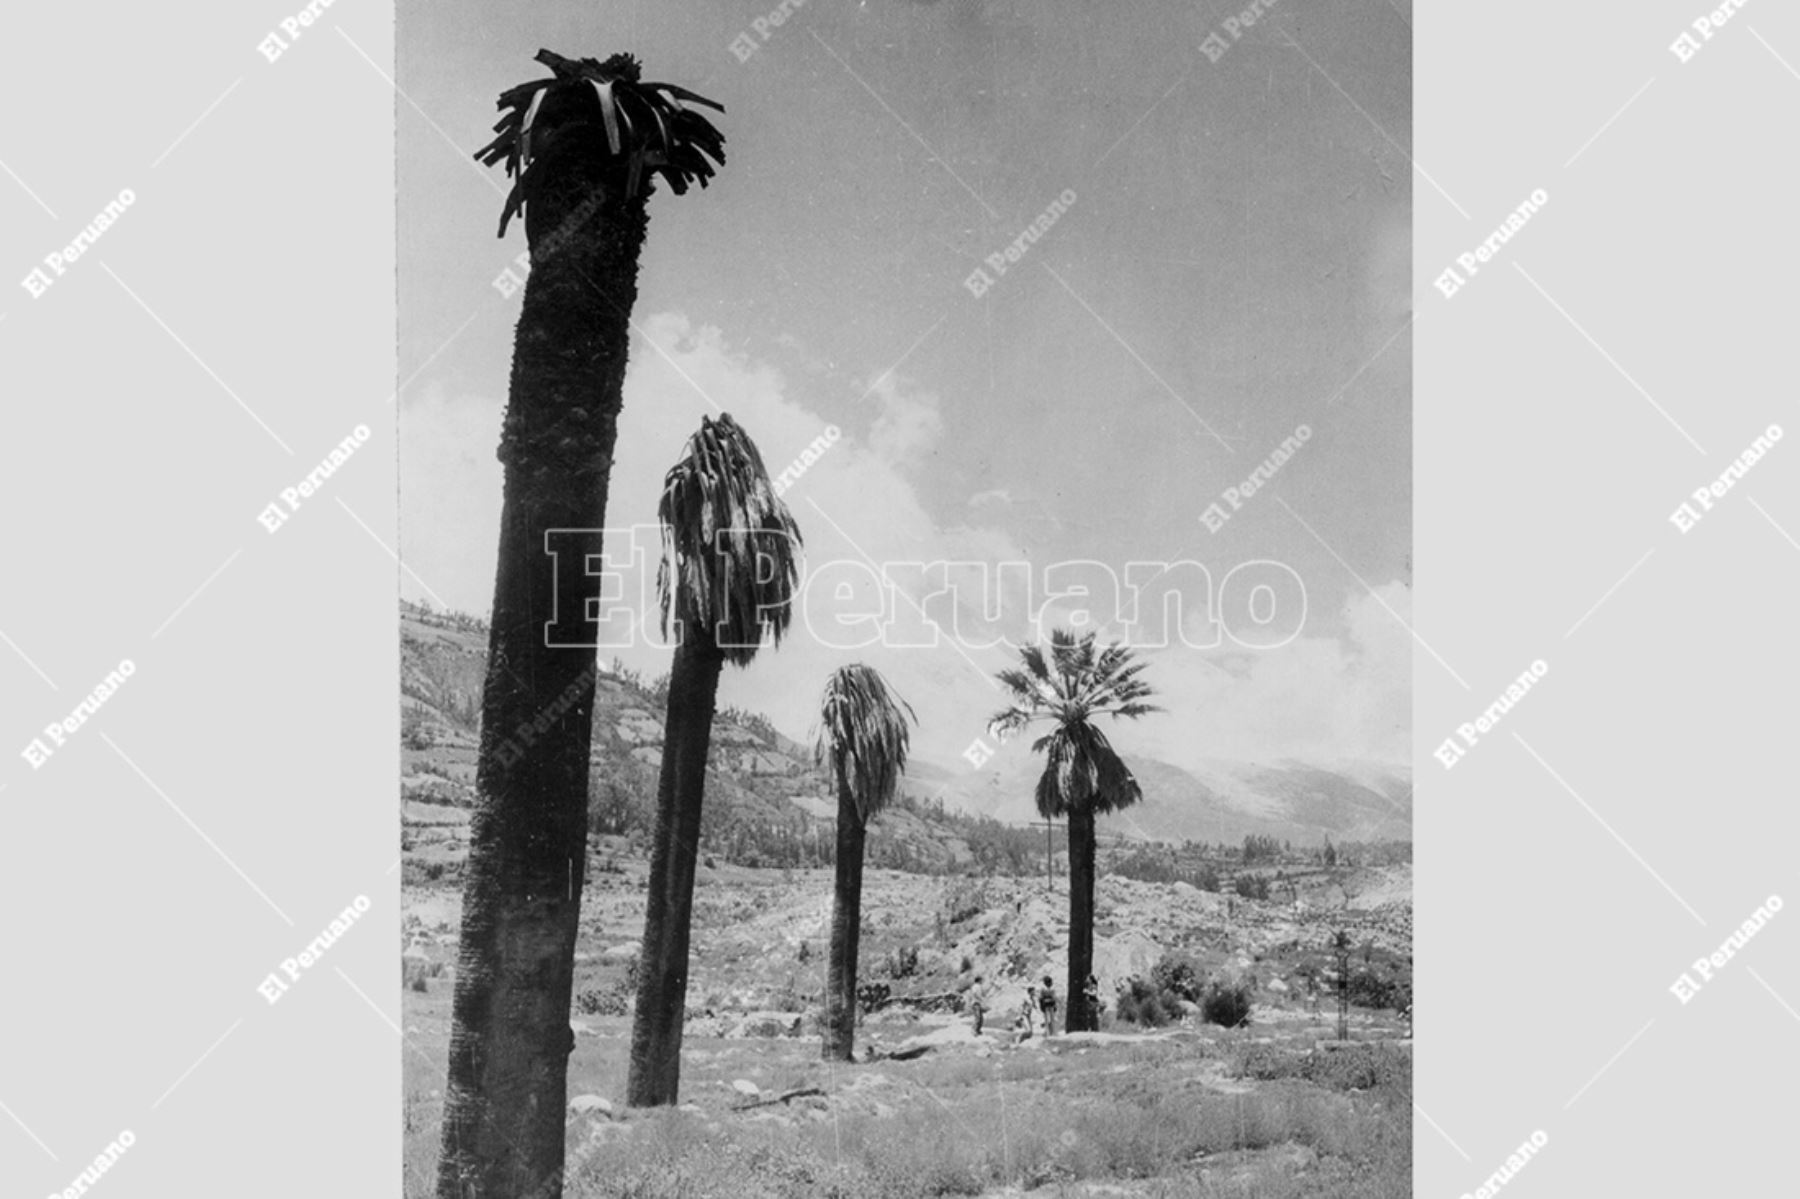 Yungay - marzo 1979 / Vista de las cuatro palmeras que quedaron tras el sismo y aluvión que sepultó la ciudad de Yungay.  Archivo Histórico de El Peruano